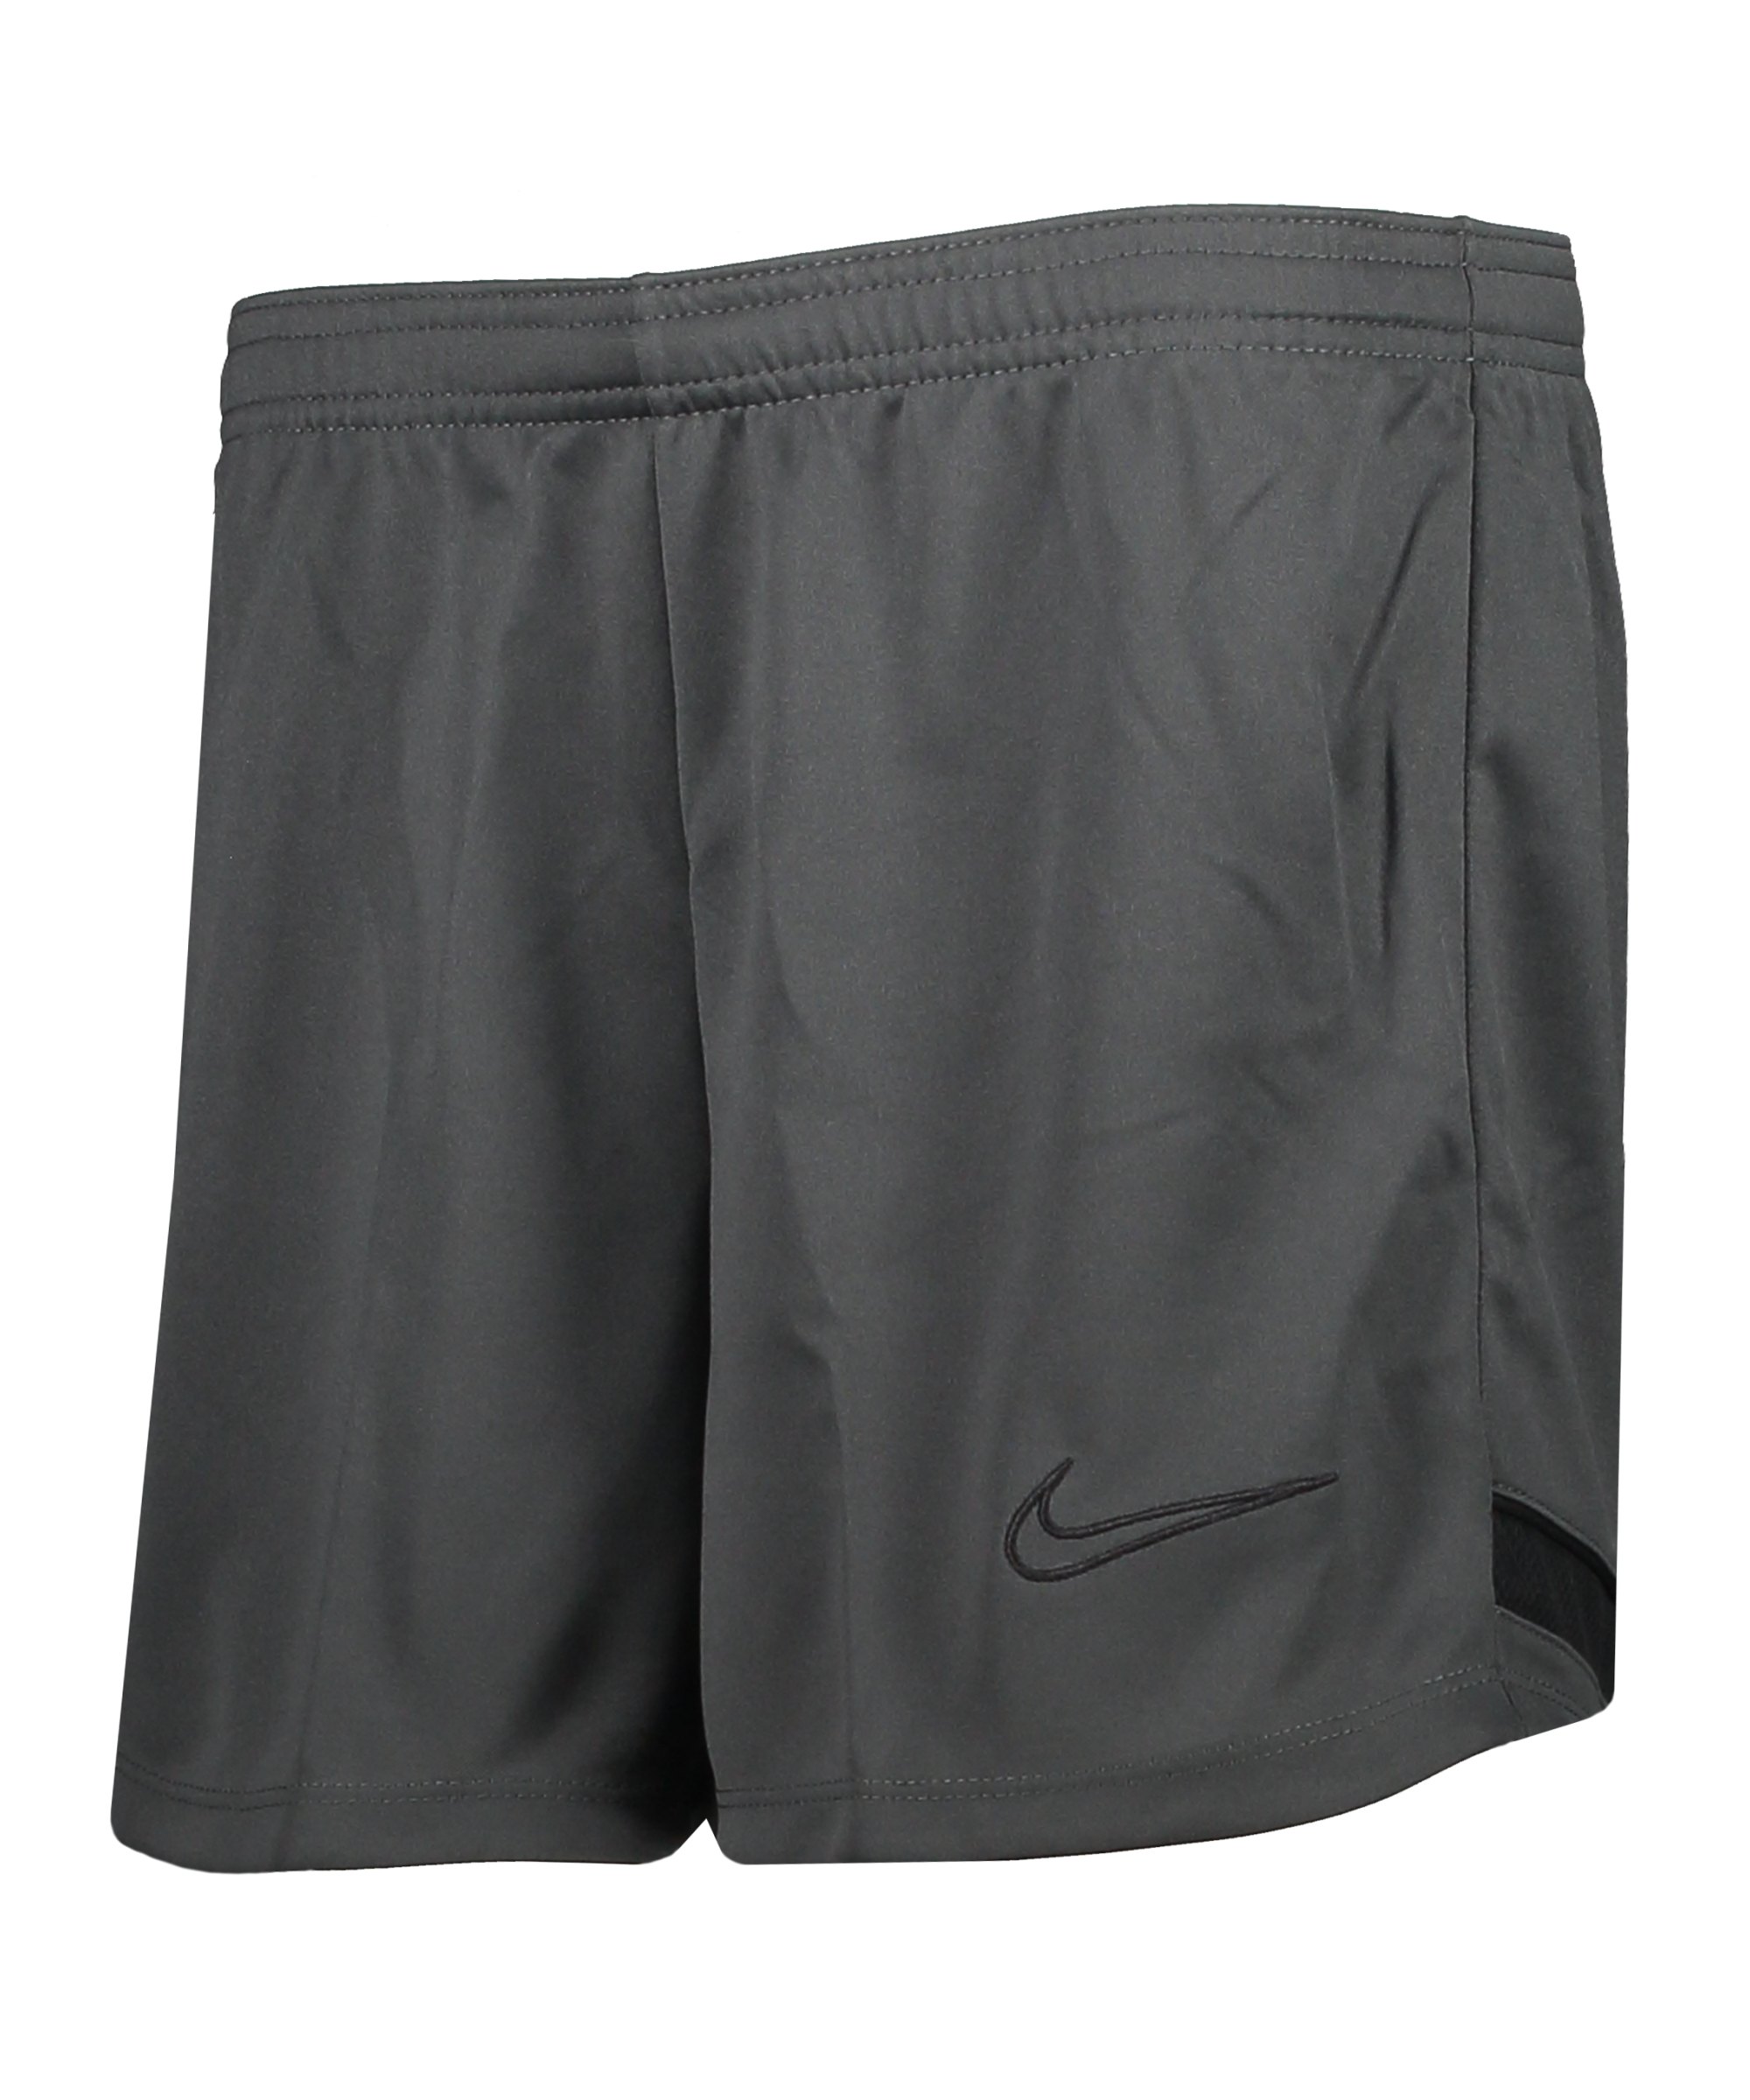 Nike Academy 21 Short Damen Grau F060 - grau